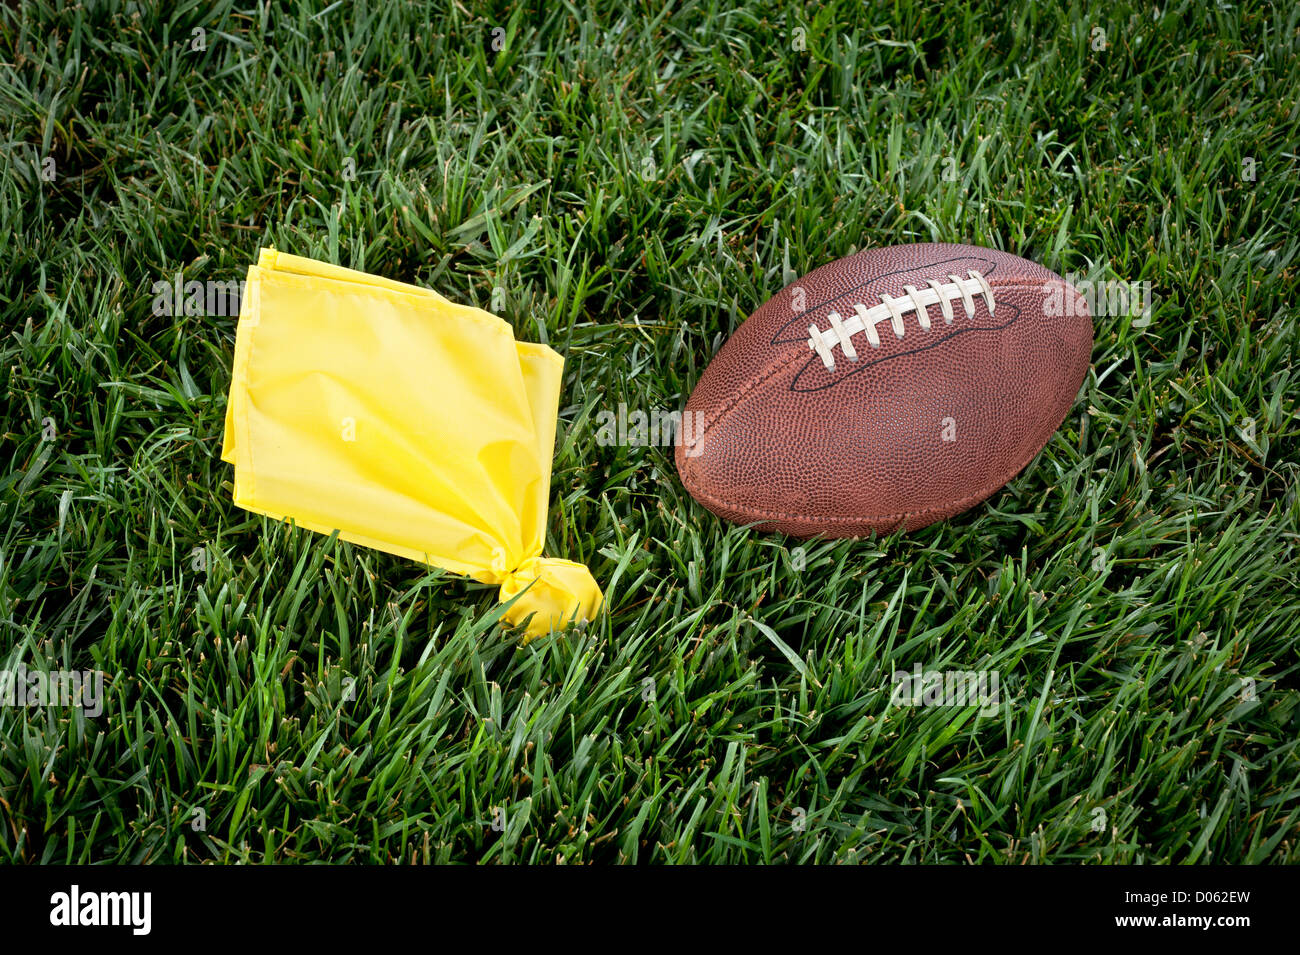 Una pena bandera amarilla y el fútbol yacen inmóviles en un campo de juego. Foto de stock